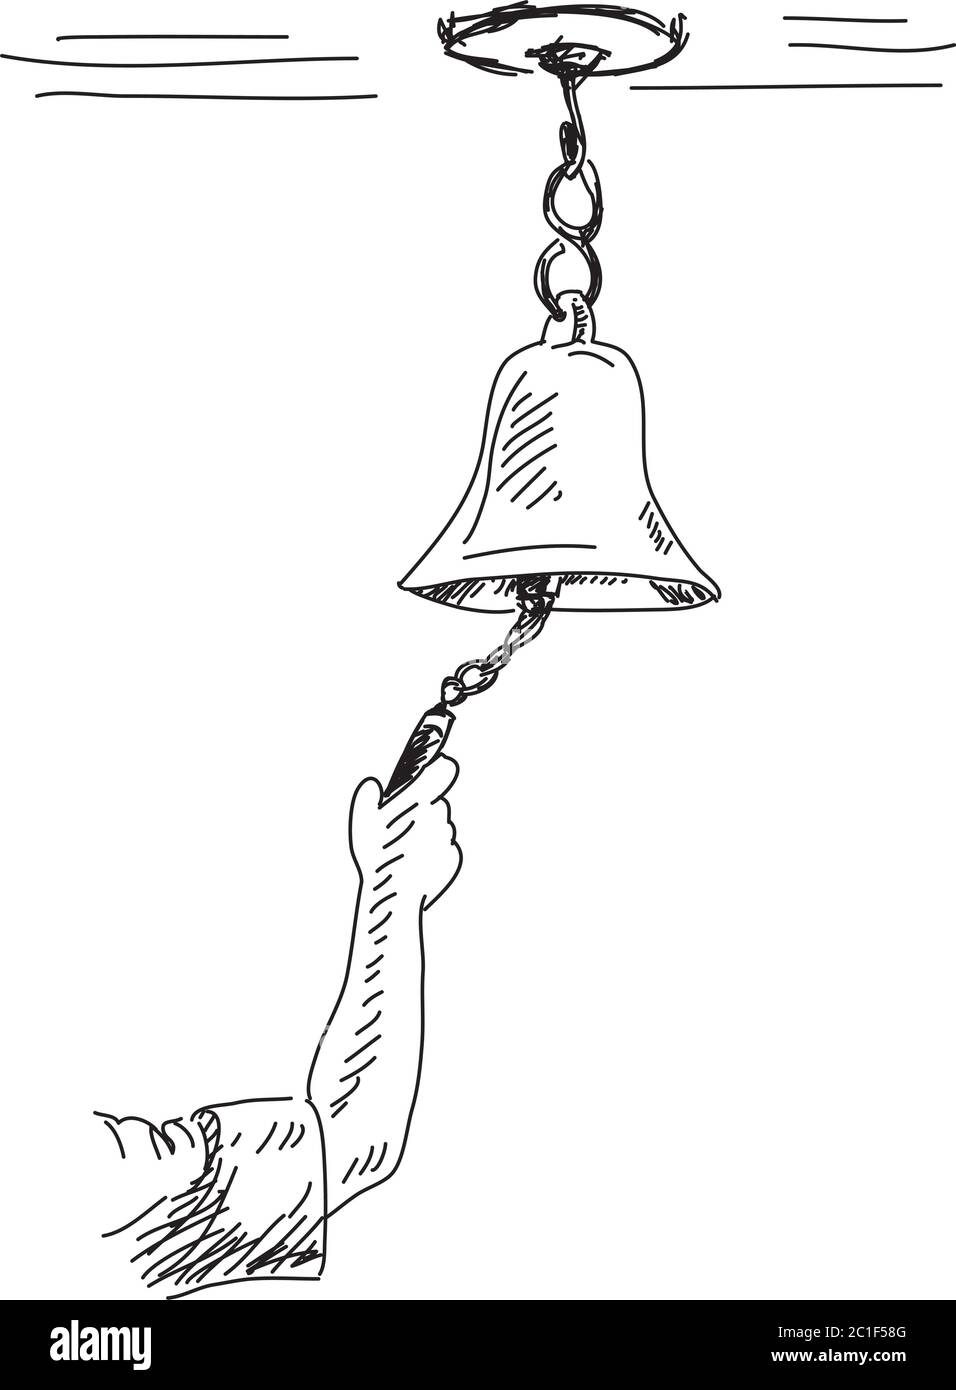 Line drawing cartoon brass bell Line drawing cartoon of a brass bell   CanStock